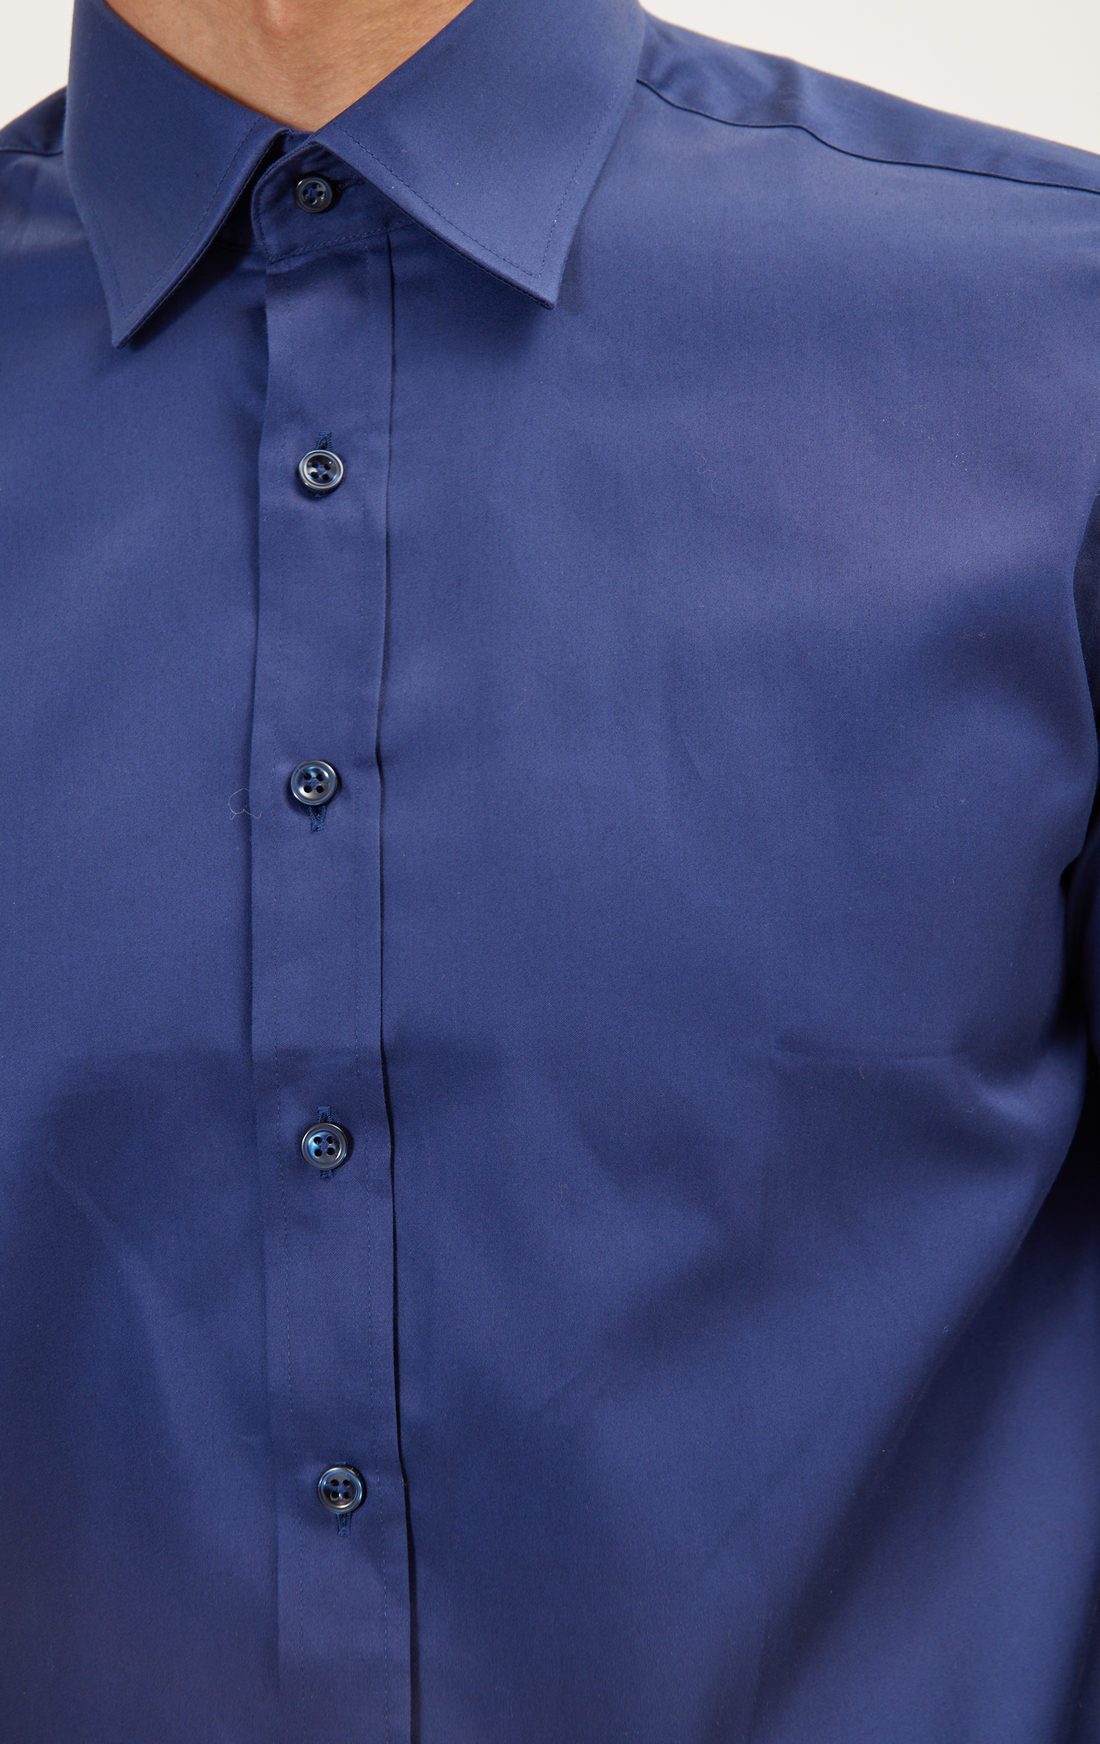 N° 4800 PURE COTTON CLASSIC COLLAR SATEEN DRESS SHIRT - NAVY BLUE